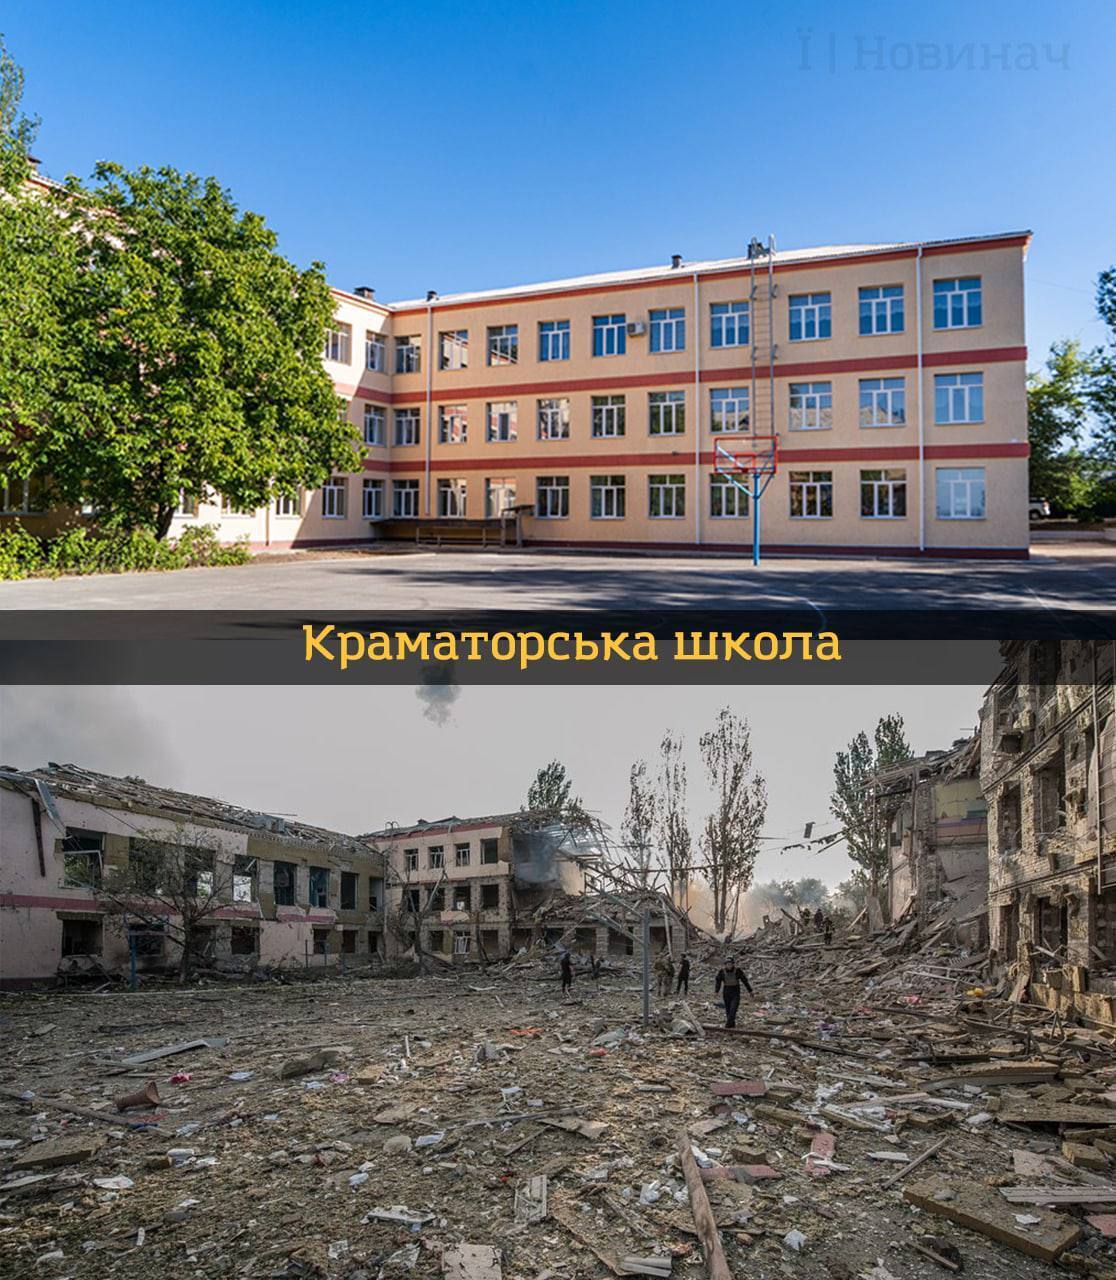 Українські освітні заклади ''до'' та ''після'' повномасштабного вторгнення рф